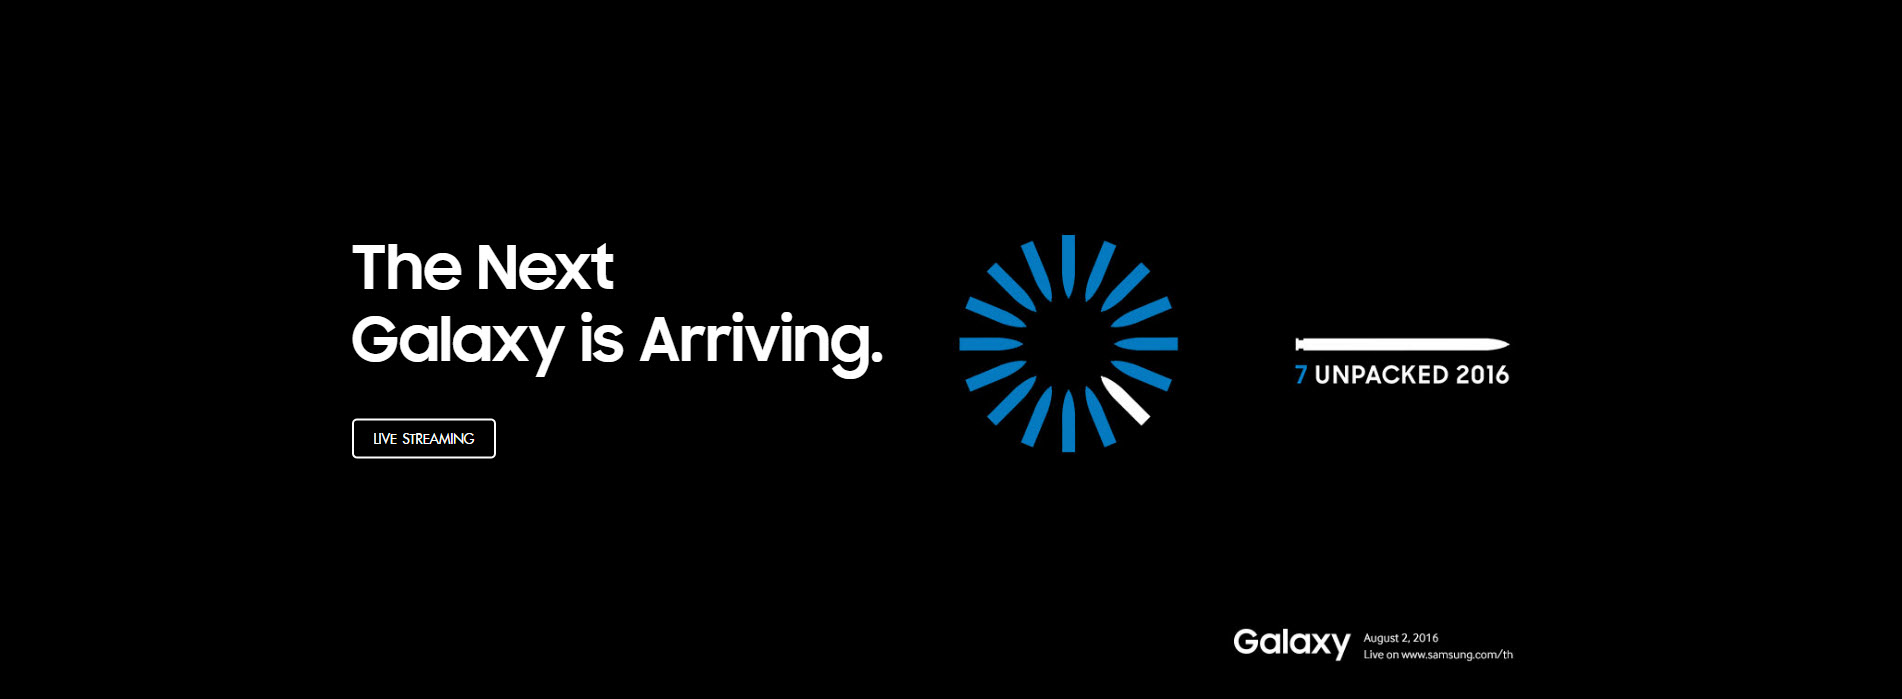 เริ่มแล้ว!!! งาน Samsung Galaxy Unpacked 2016 เปิดตัว Galaxy Note 7 จาก Samsung